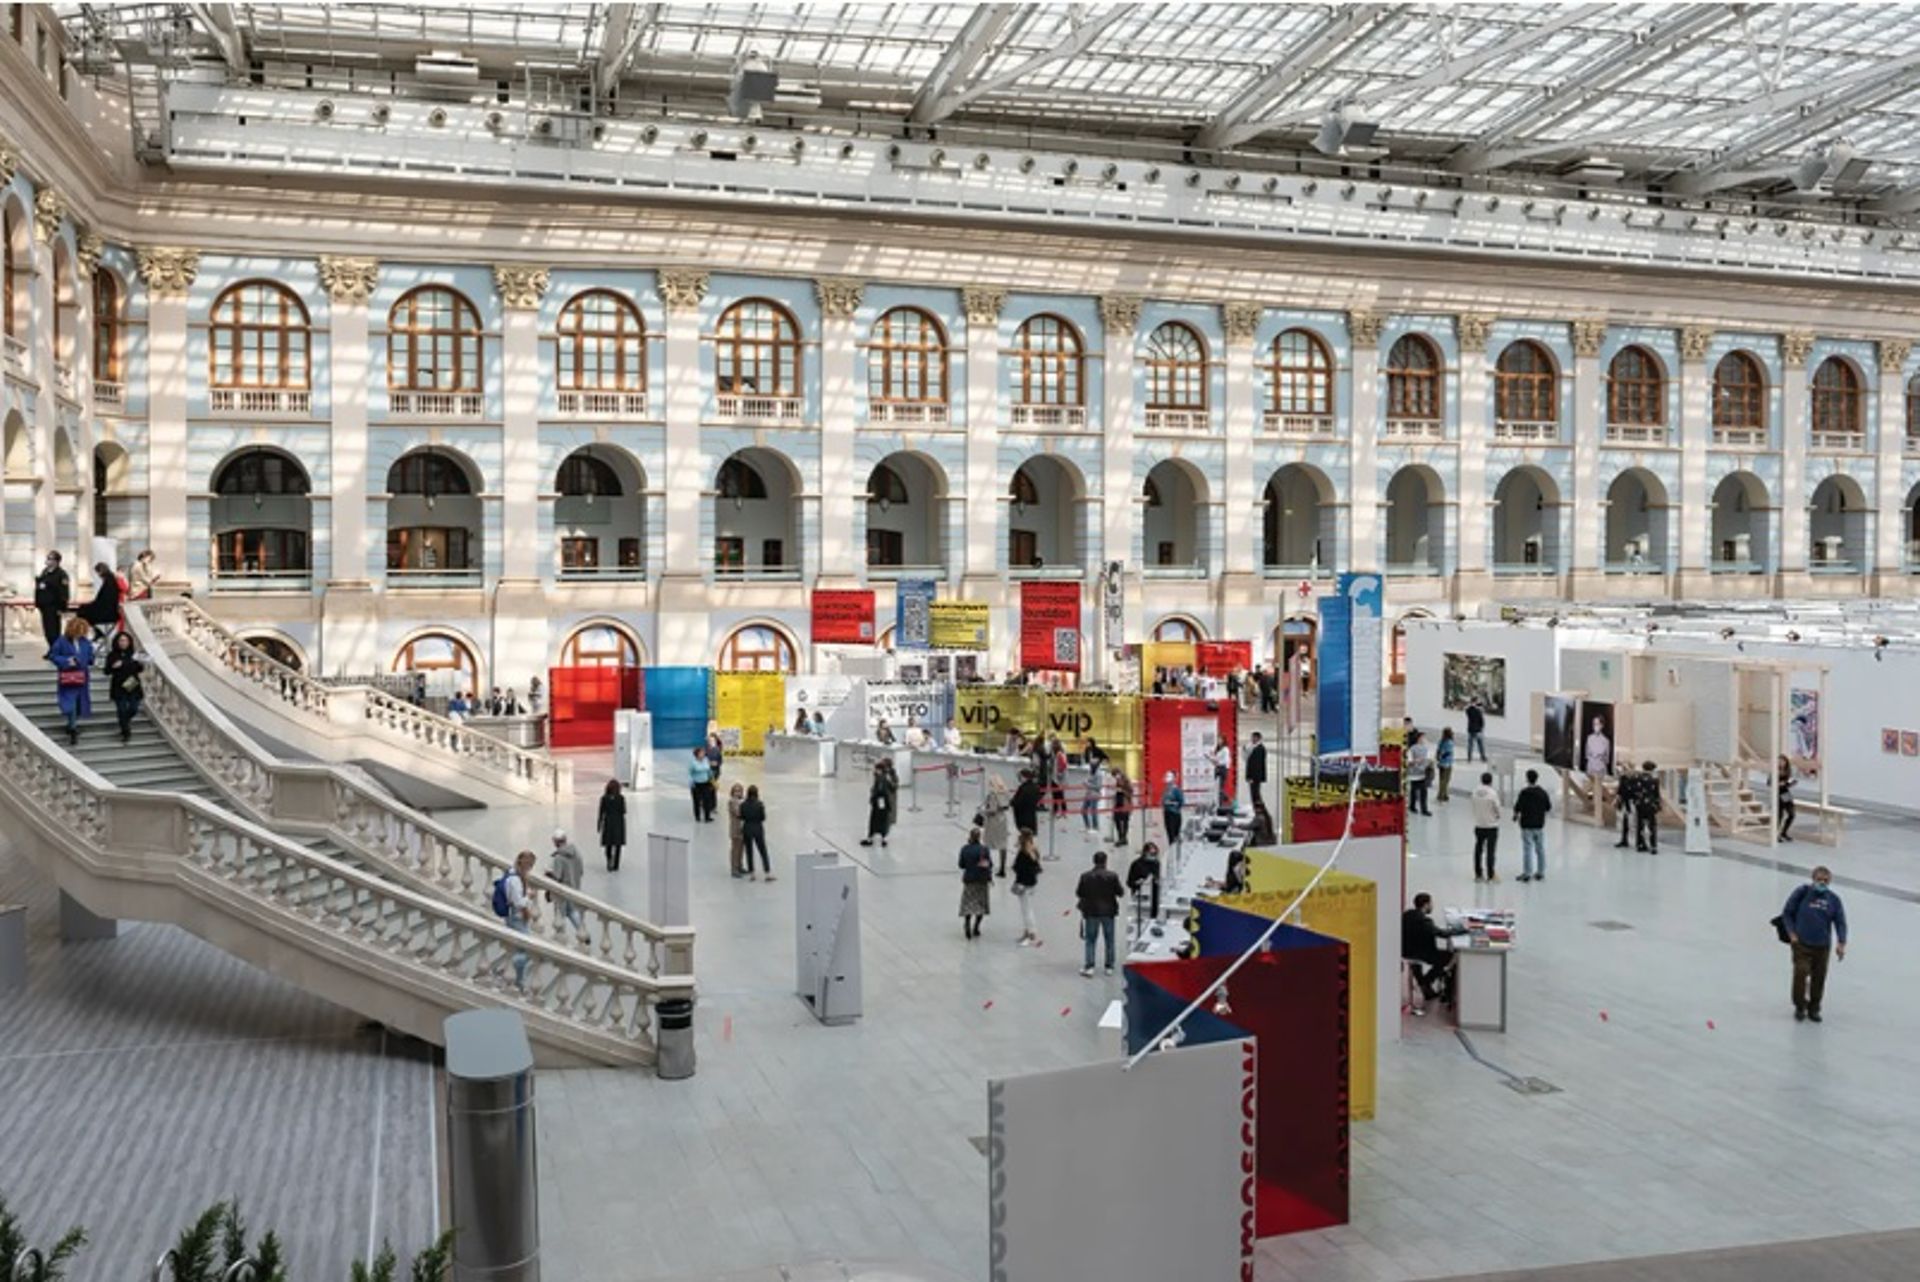 מהדורת 2020 של יריד קוסמוסקבה כללה גלריות מכל אירופה; השנה, כמעט כולם מקומיים

באדיבות קוסמוסקבה